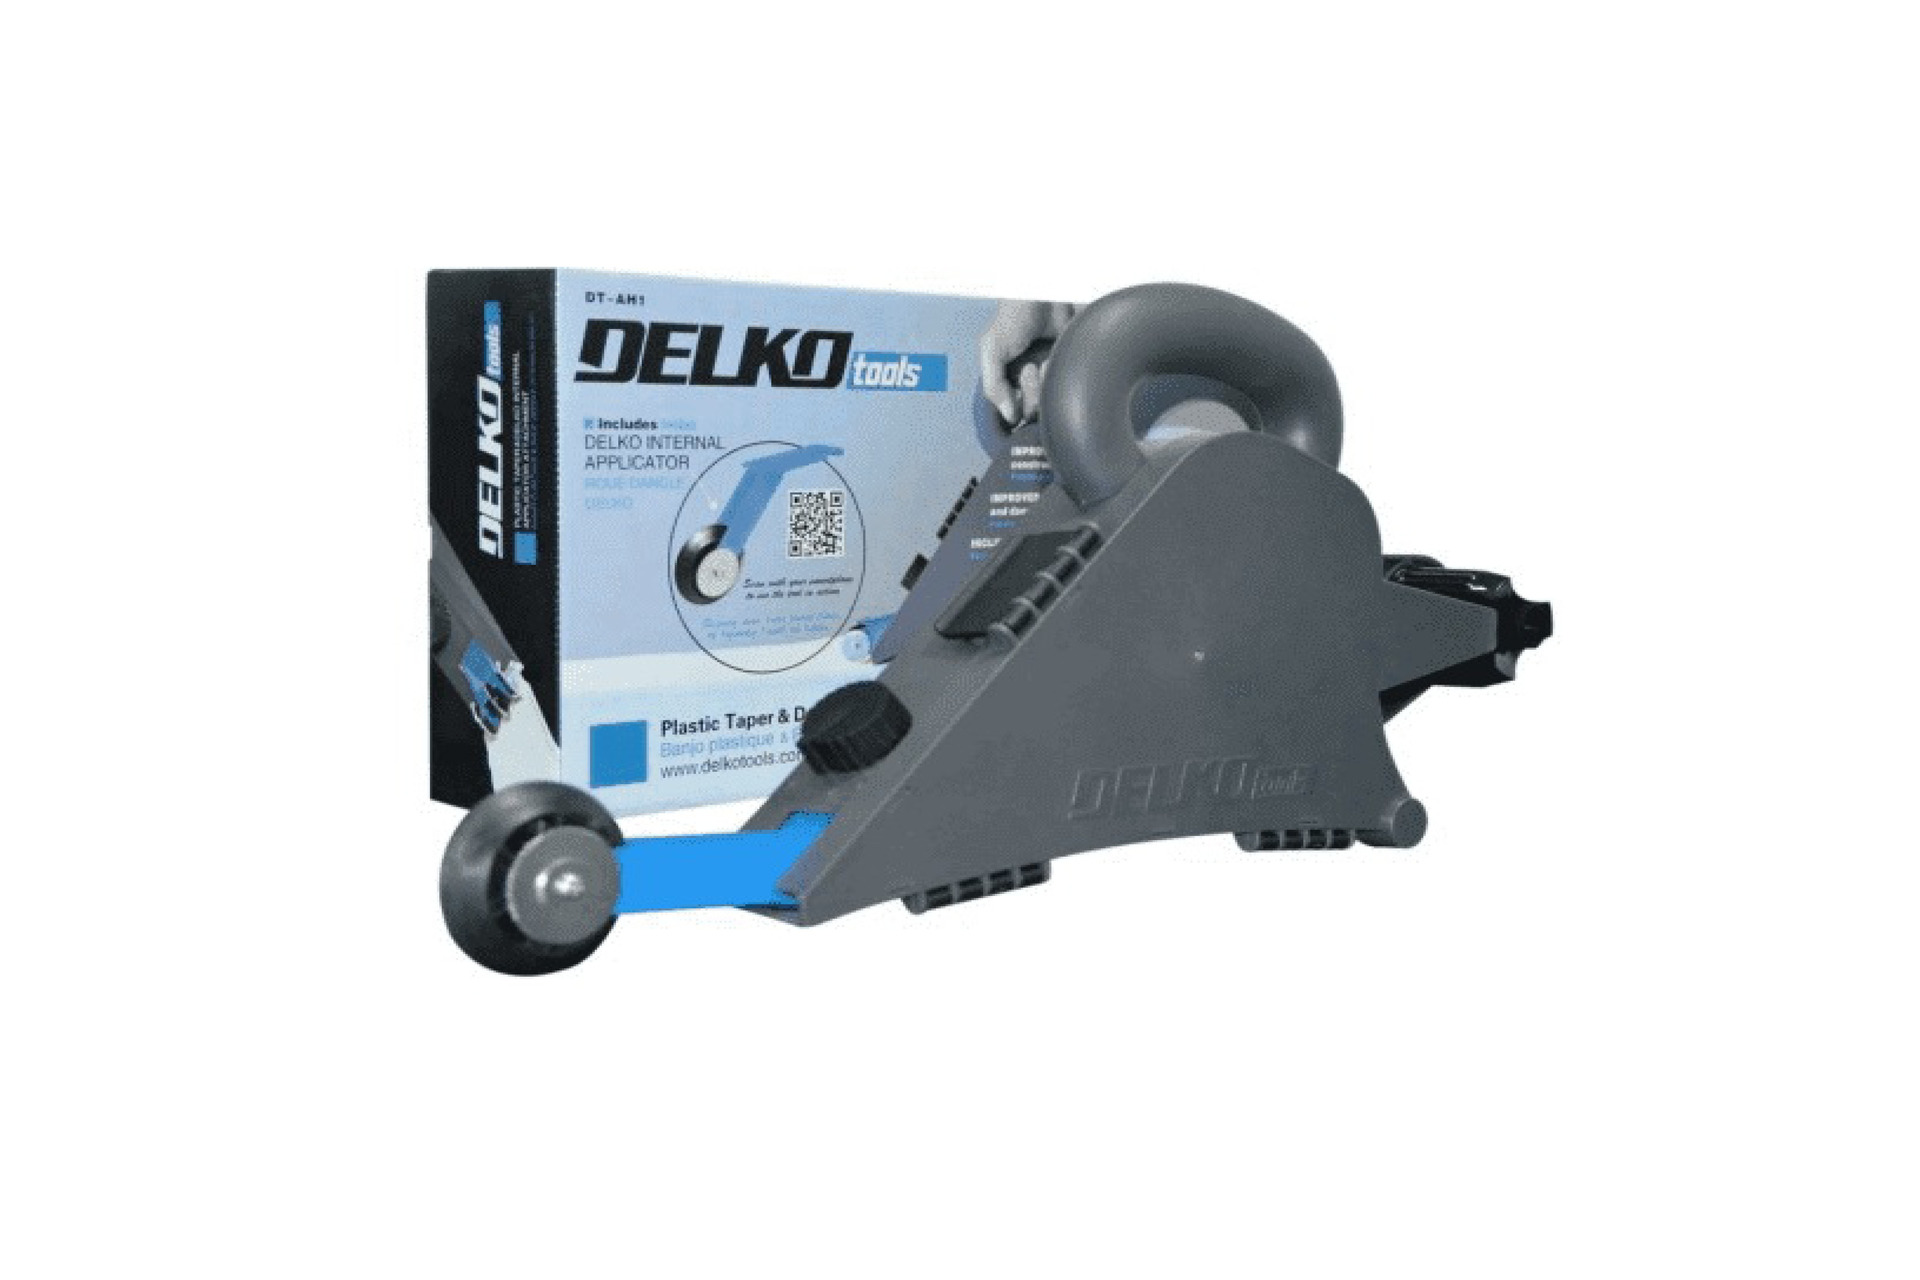 Delko ToolsBusiness For Sale